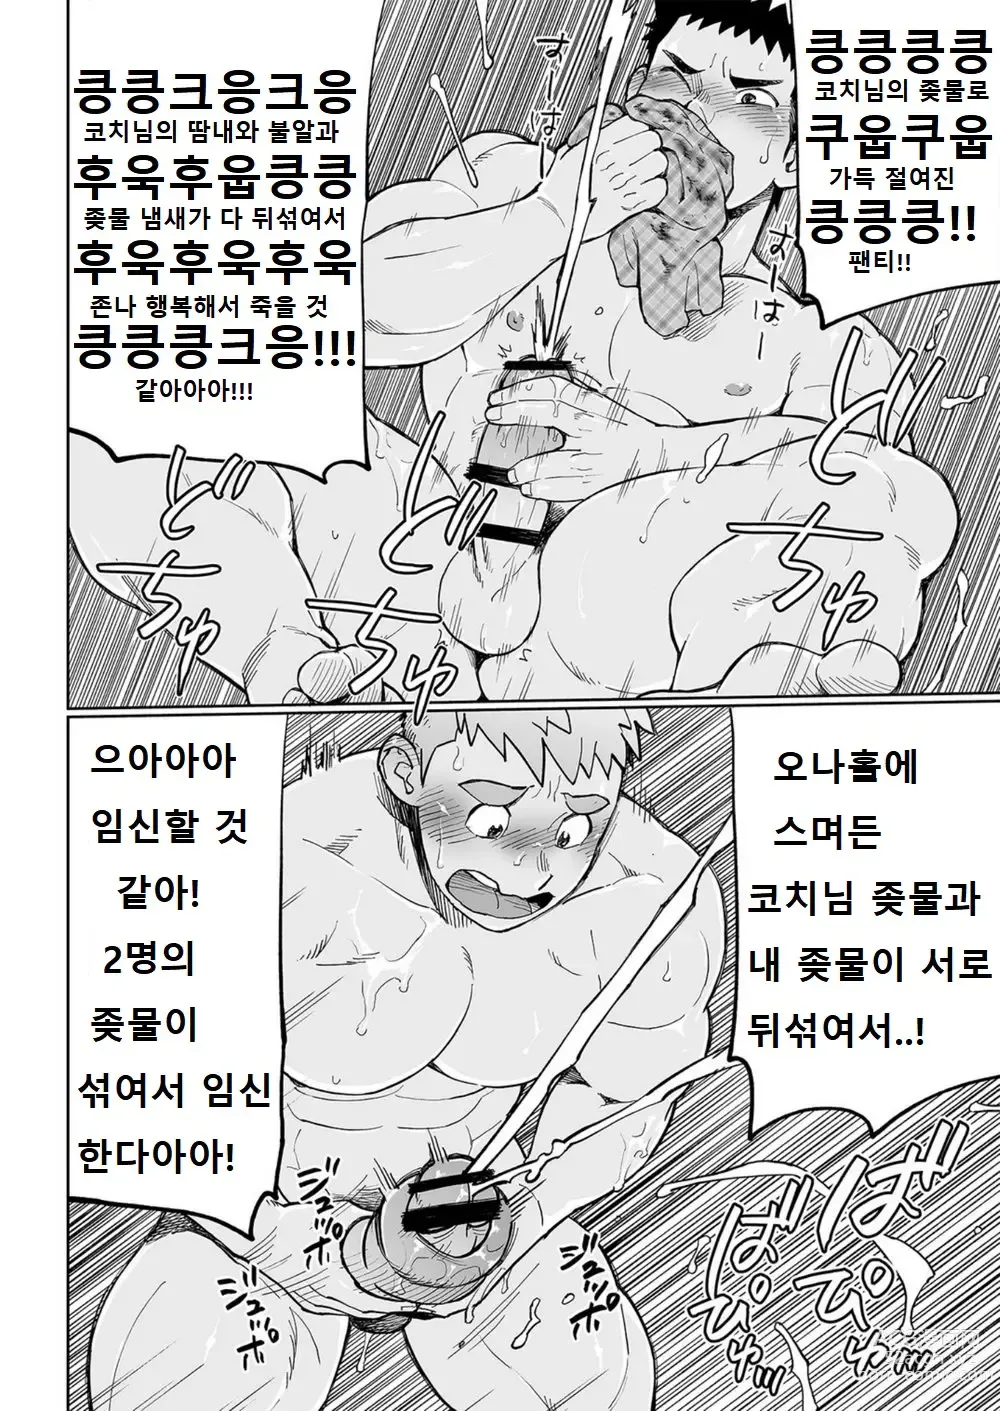 Page 33 of doujinshi 우시오 코치의 푸슉푸슉하는 하루